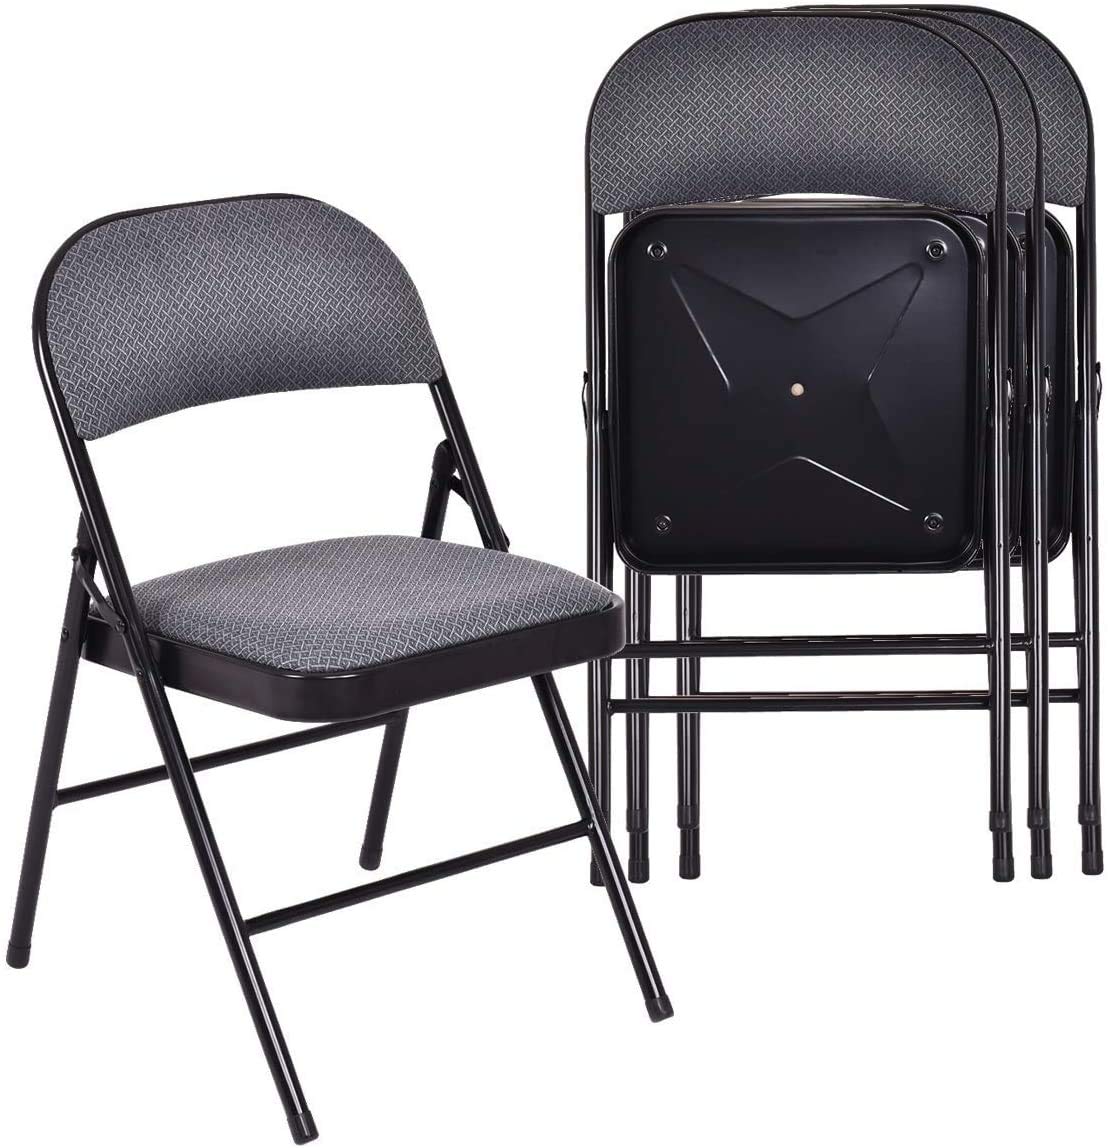 ReunionG Charles Folding Chair, 4 PCS, Black